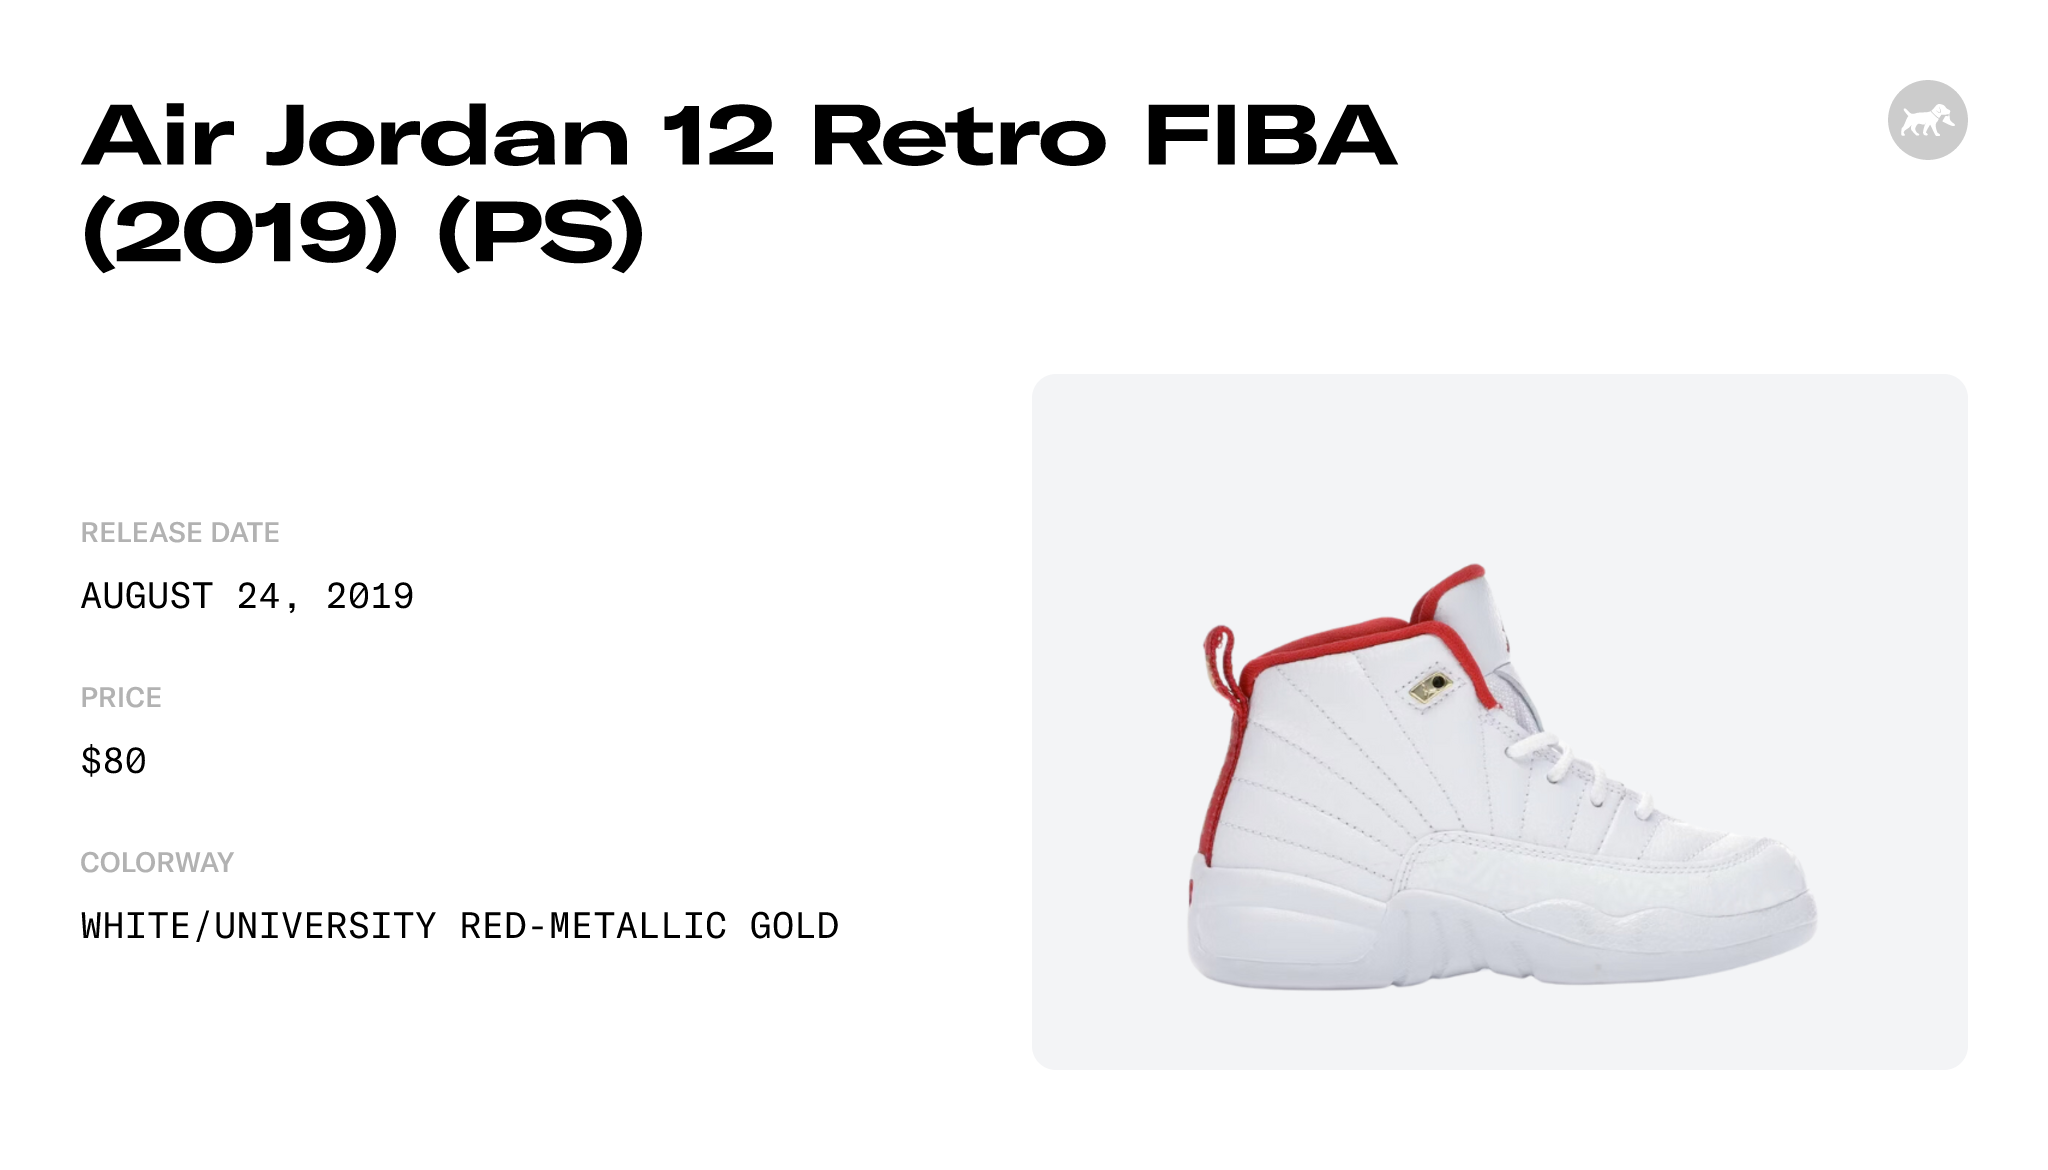 Air Jordan 12 Retro FIBA